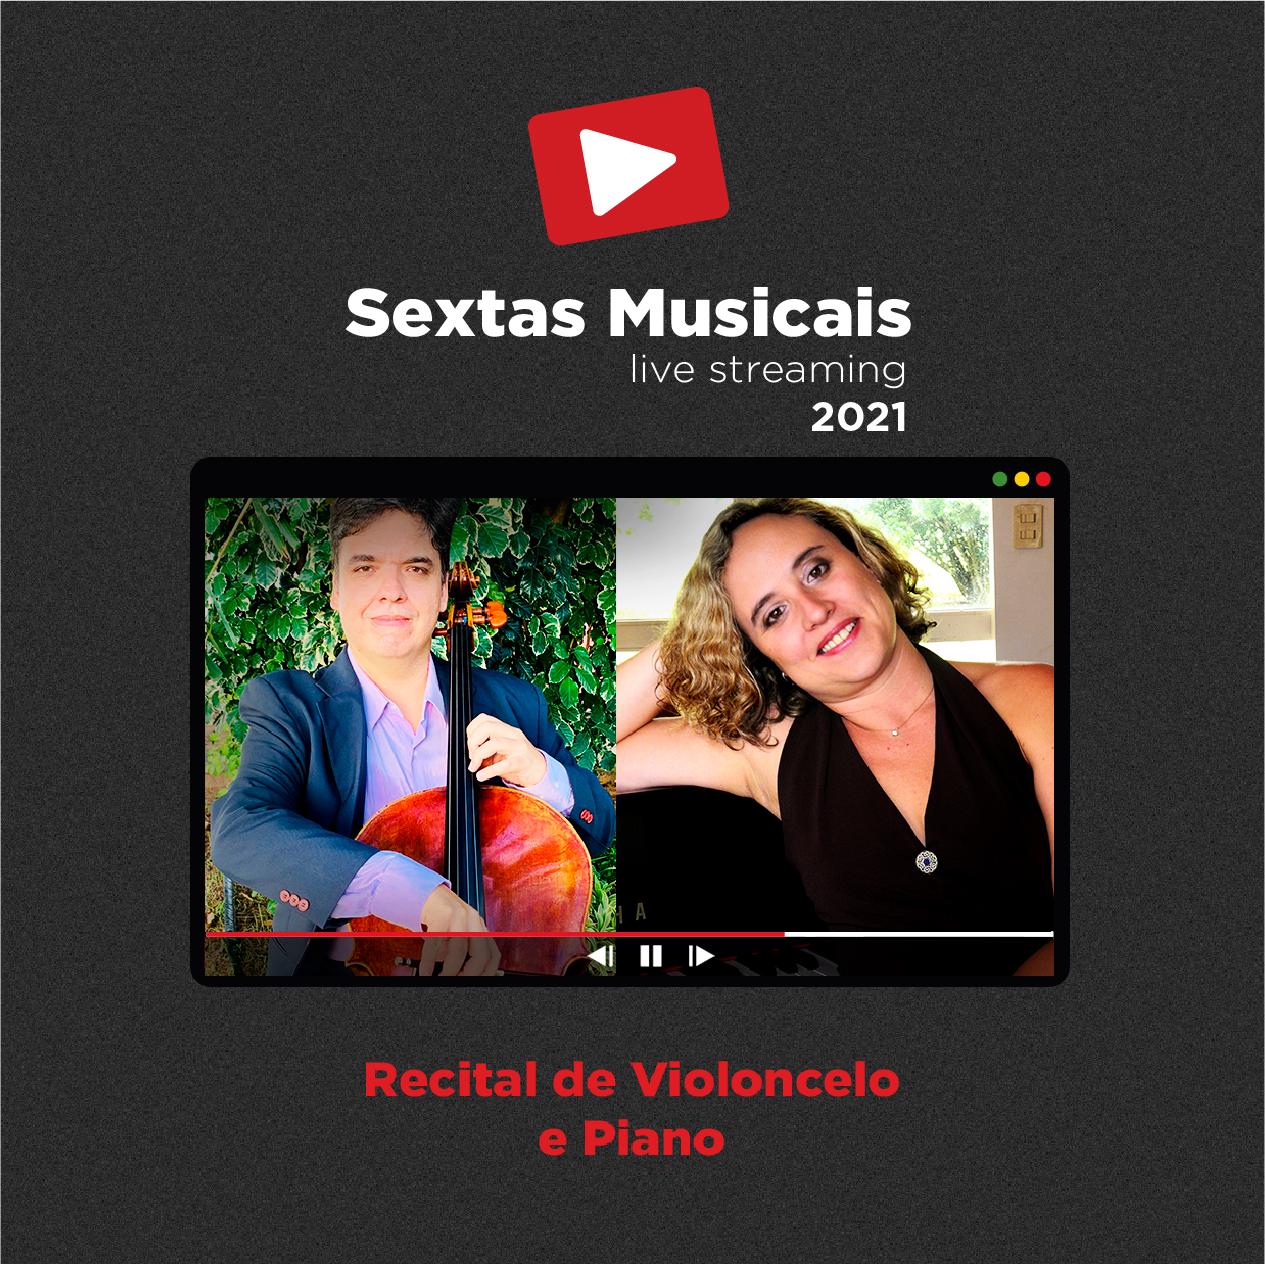 Sextas Musicais - Live streaming: Recital de Violoncelo e Piano